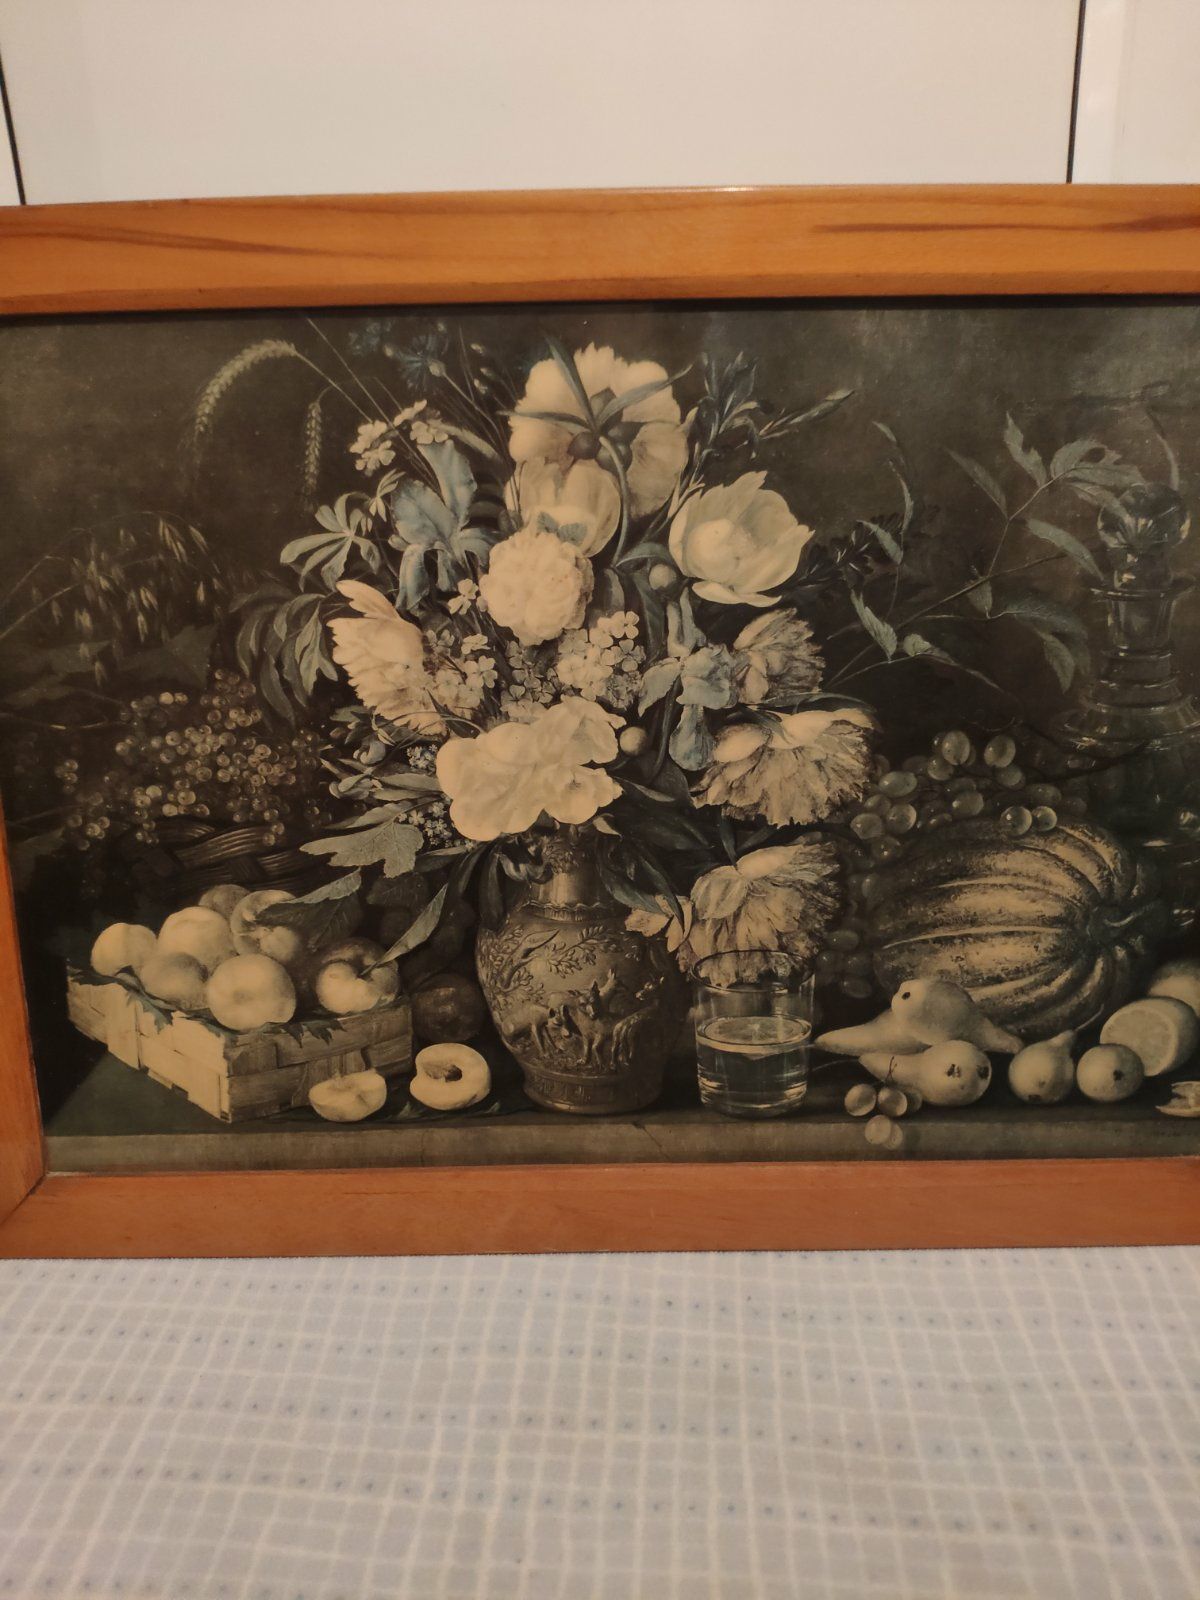 Репродукция на ледерине картины Хруцкий. Цветы и плоды